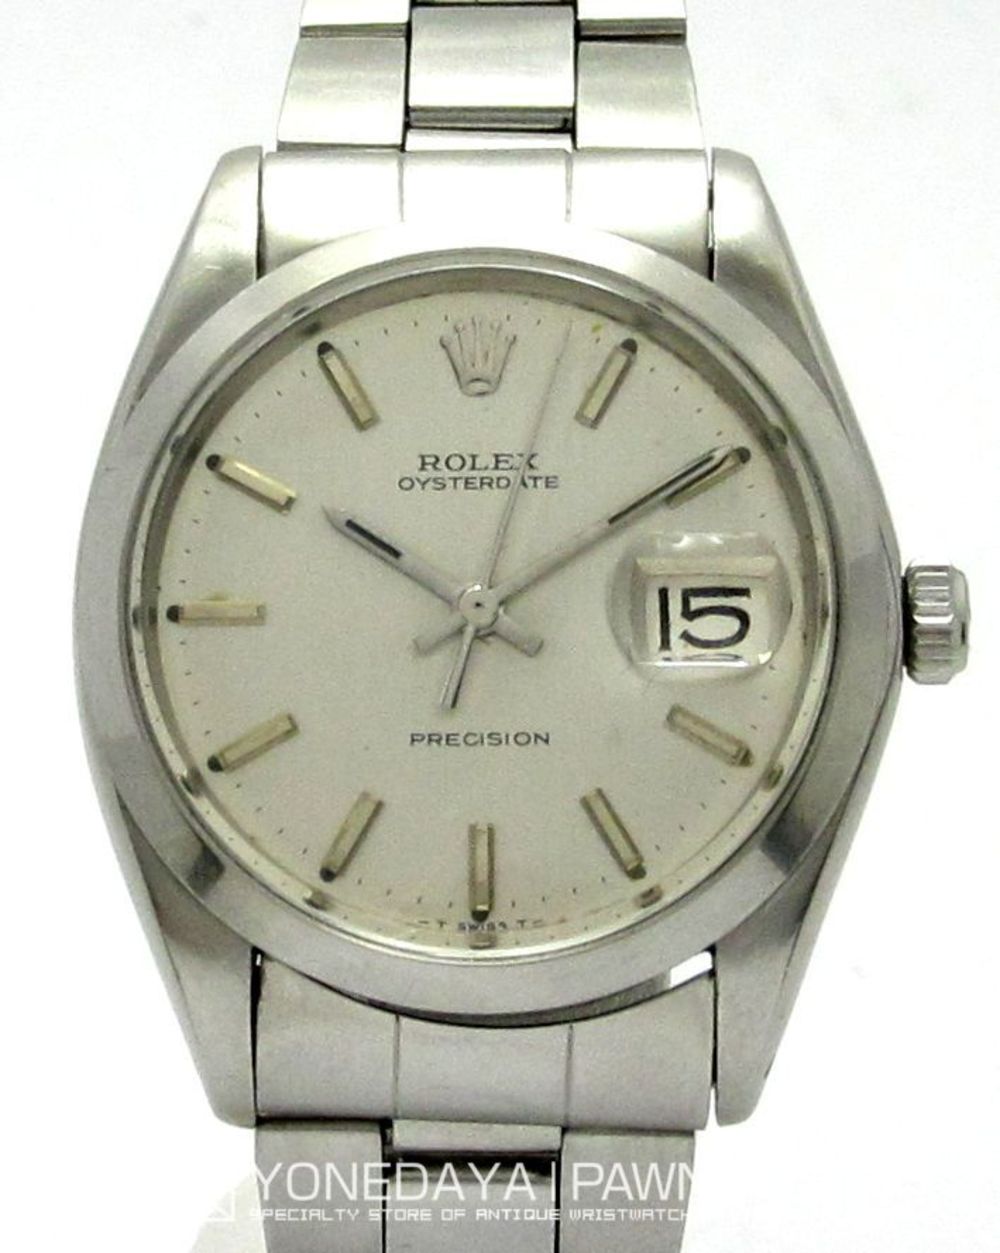 ロレックス（ROLEX） オイスター デイト プレシジョン Rfe-6694 Sir-2298※※※（1967年製）  手巻機械式ムーブ（cal.1210）|ロレックス・アンティーク腕時計 中古品販売買取なら大阪 米田屋